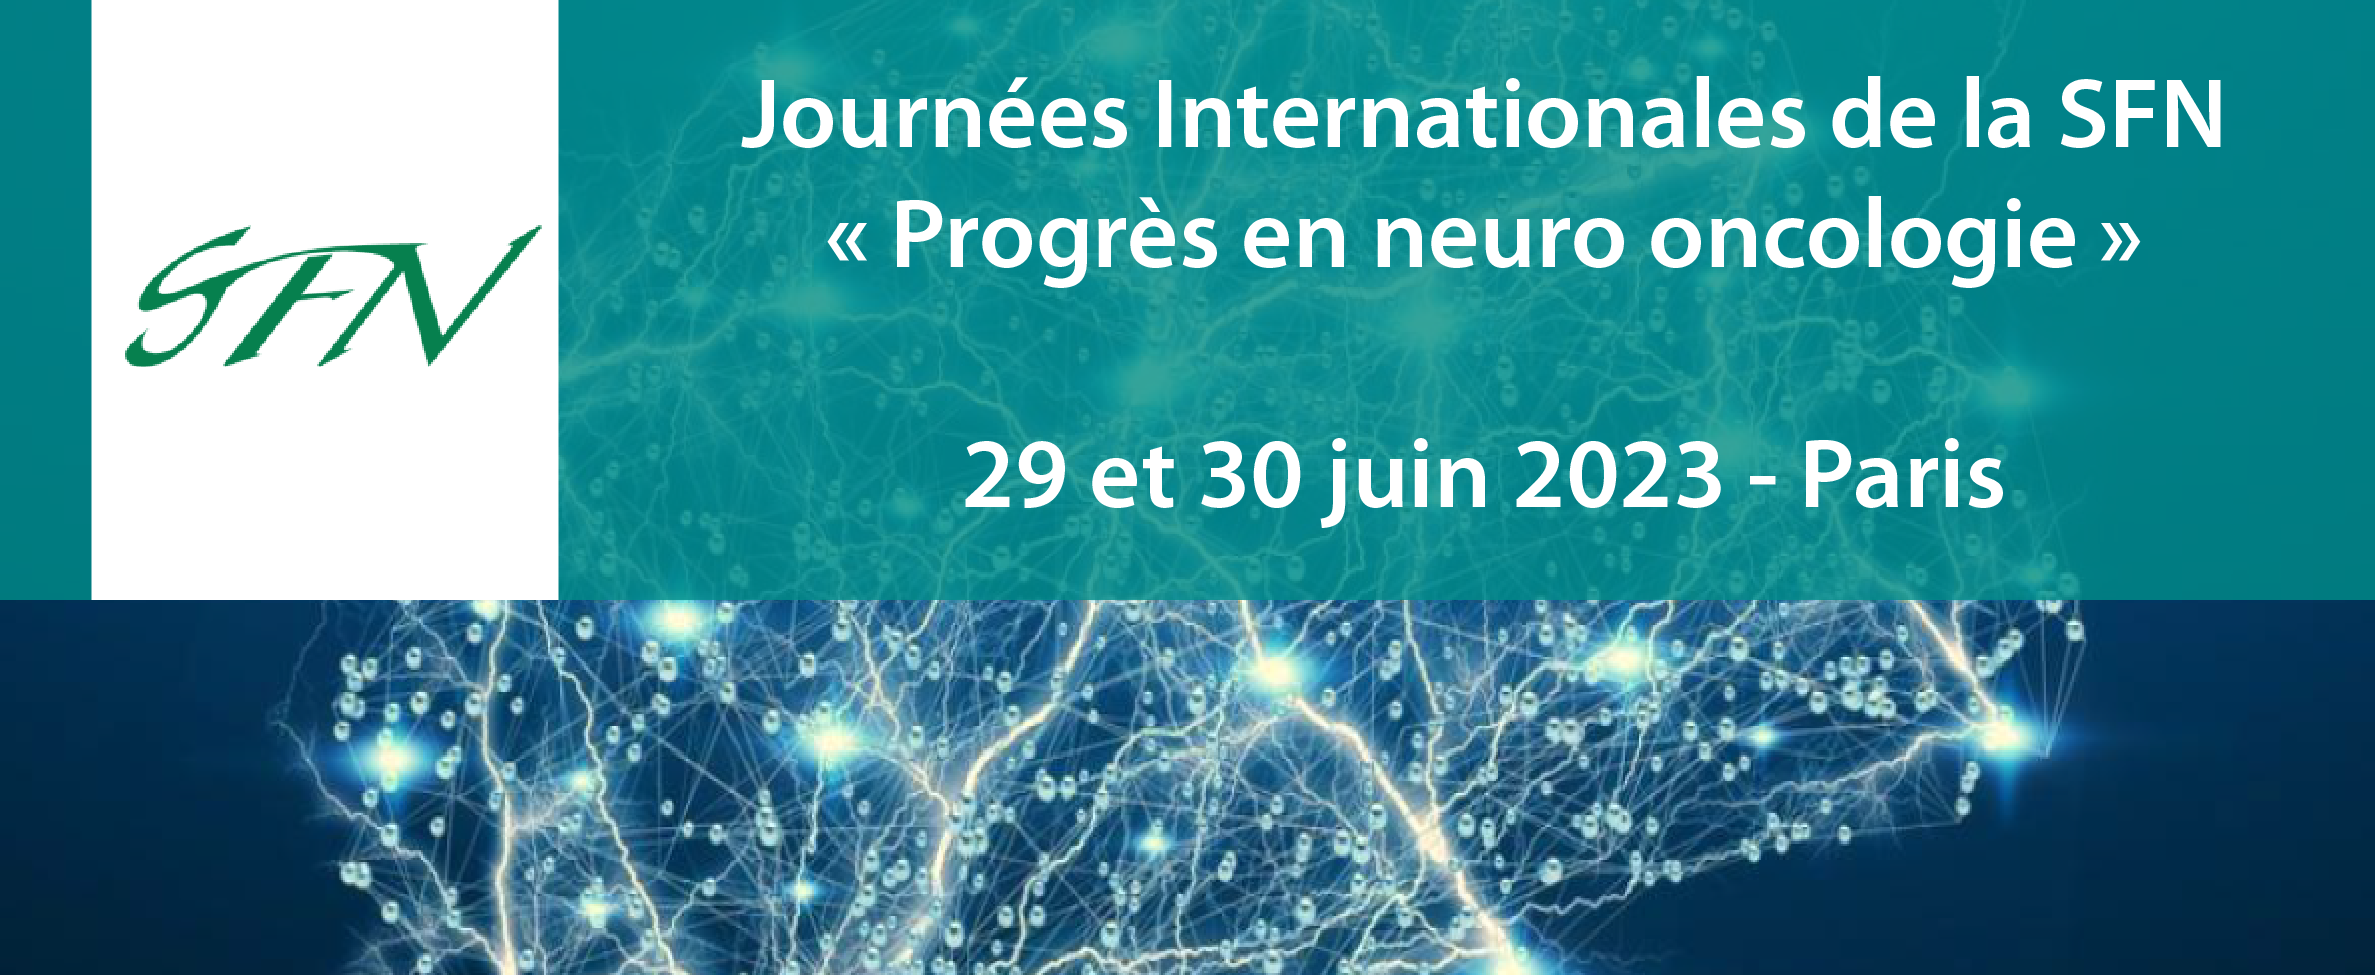 Journées Internationales de la Société Française de Neurologie - SFN 2023